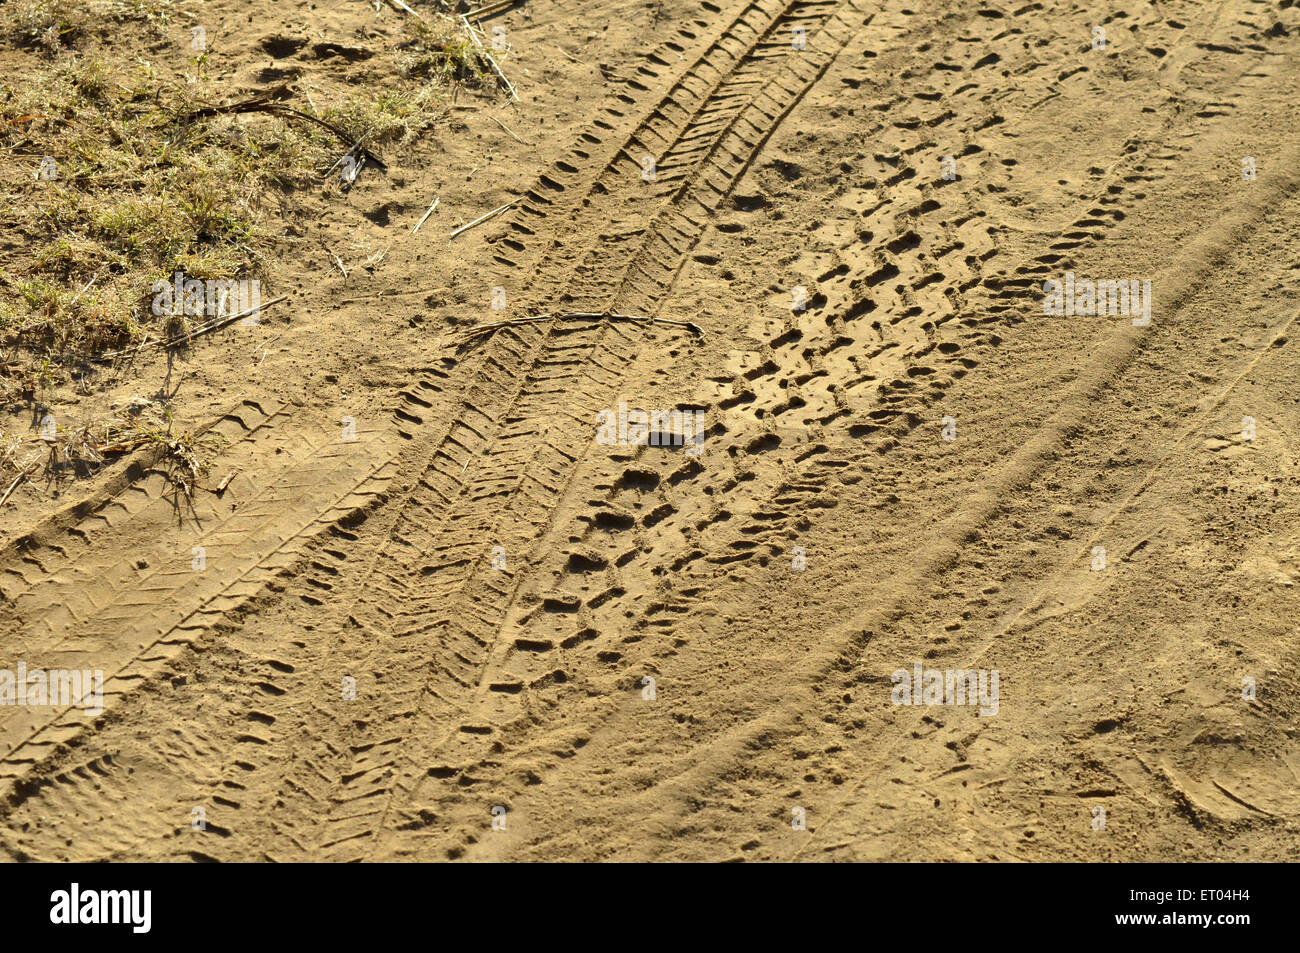 Jeep marques de pneu dans la boue à Gujarat Inde Banque D'Images